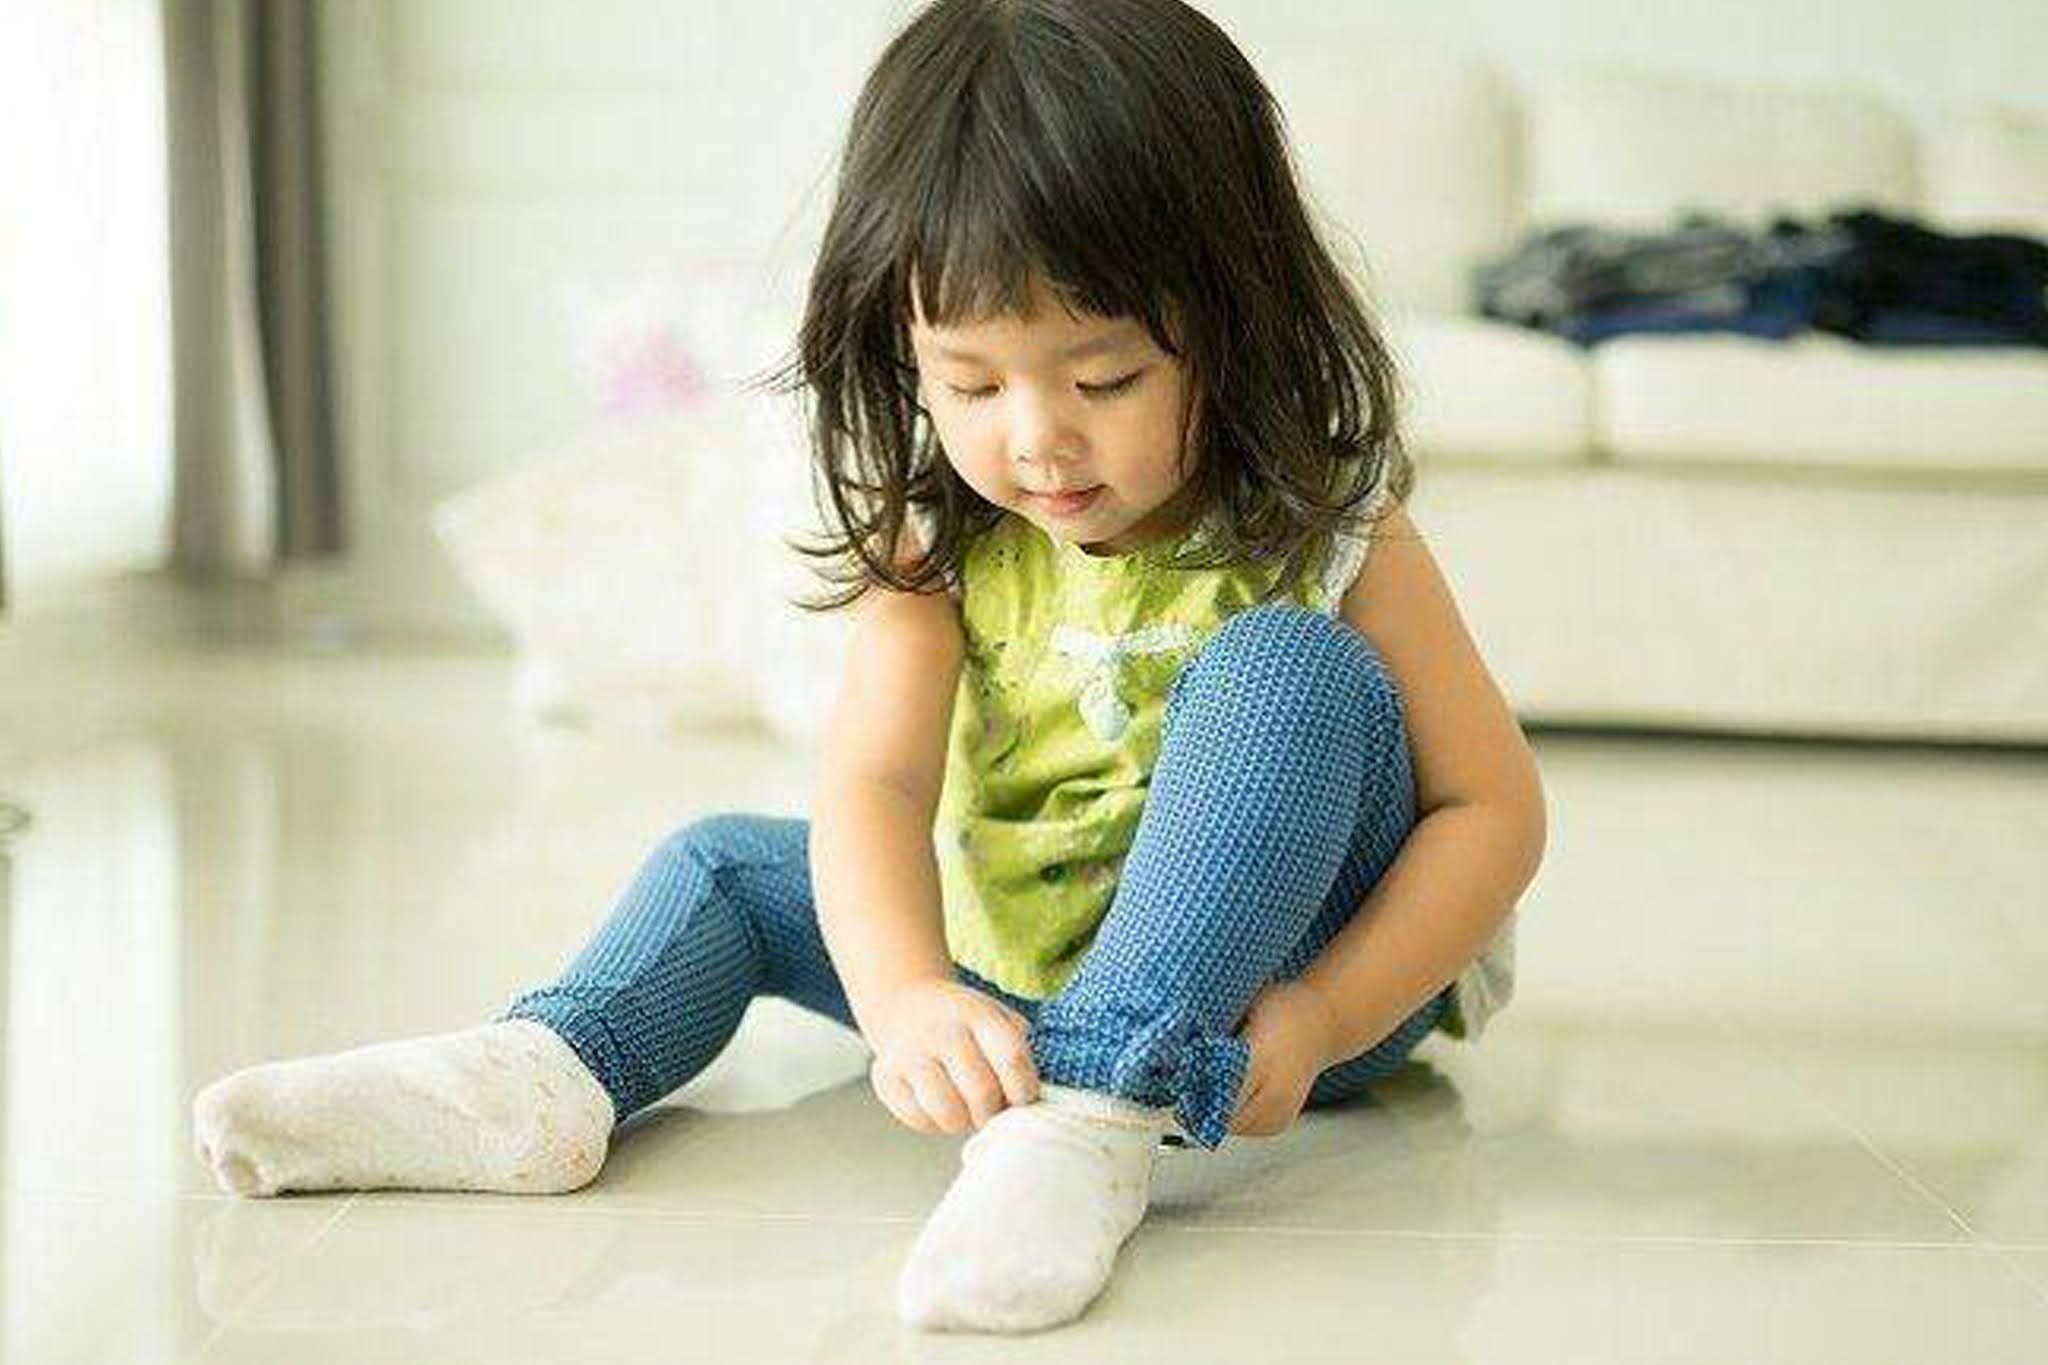 Картинка ребенка одевается. Ребенок одевается. Маленькая девочка в носочках. Девочка надевает носки. Одеваться.